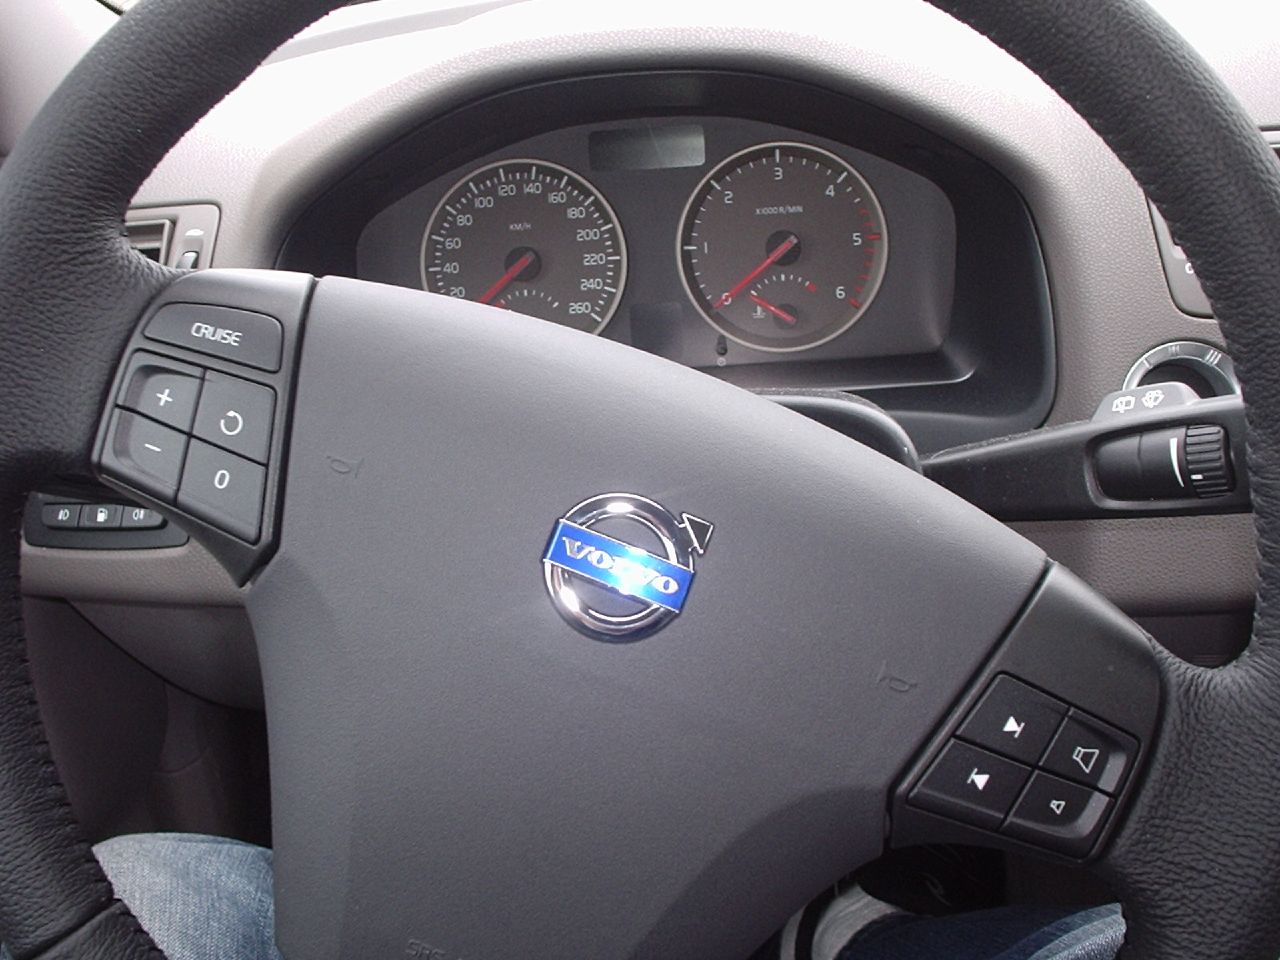 2006 Volvo V50 1.6D steering wheel | Flickr - Photo Sharing!